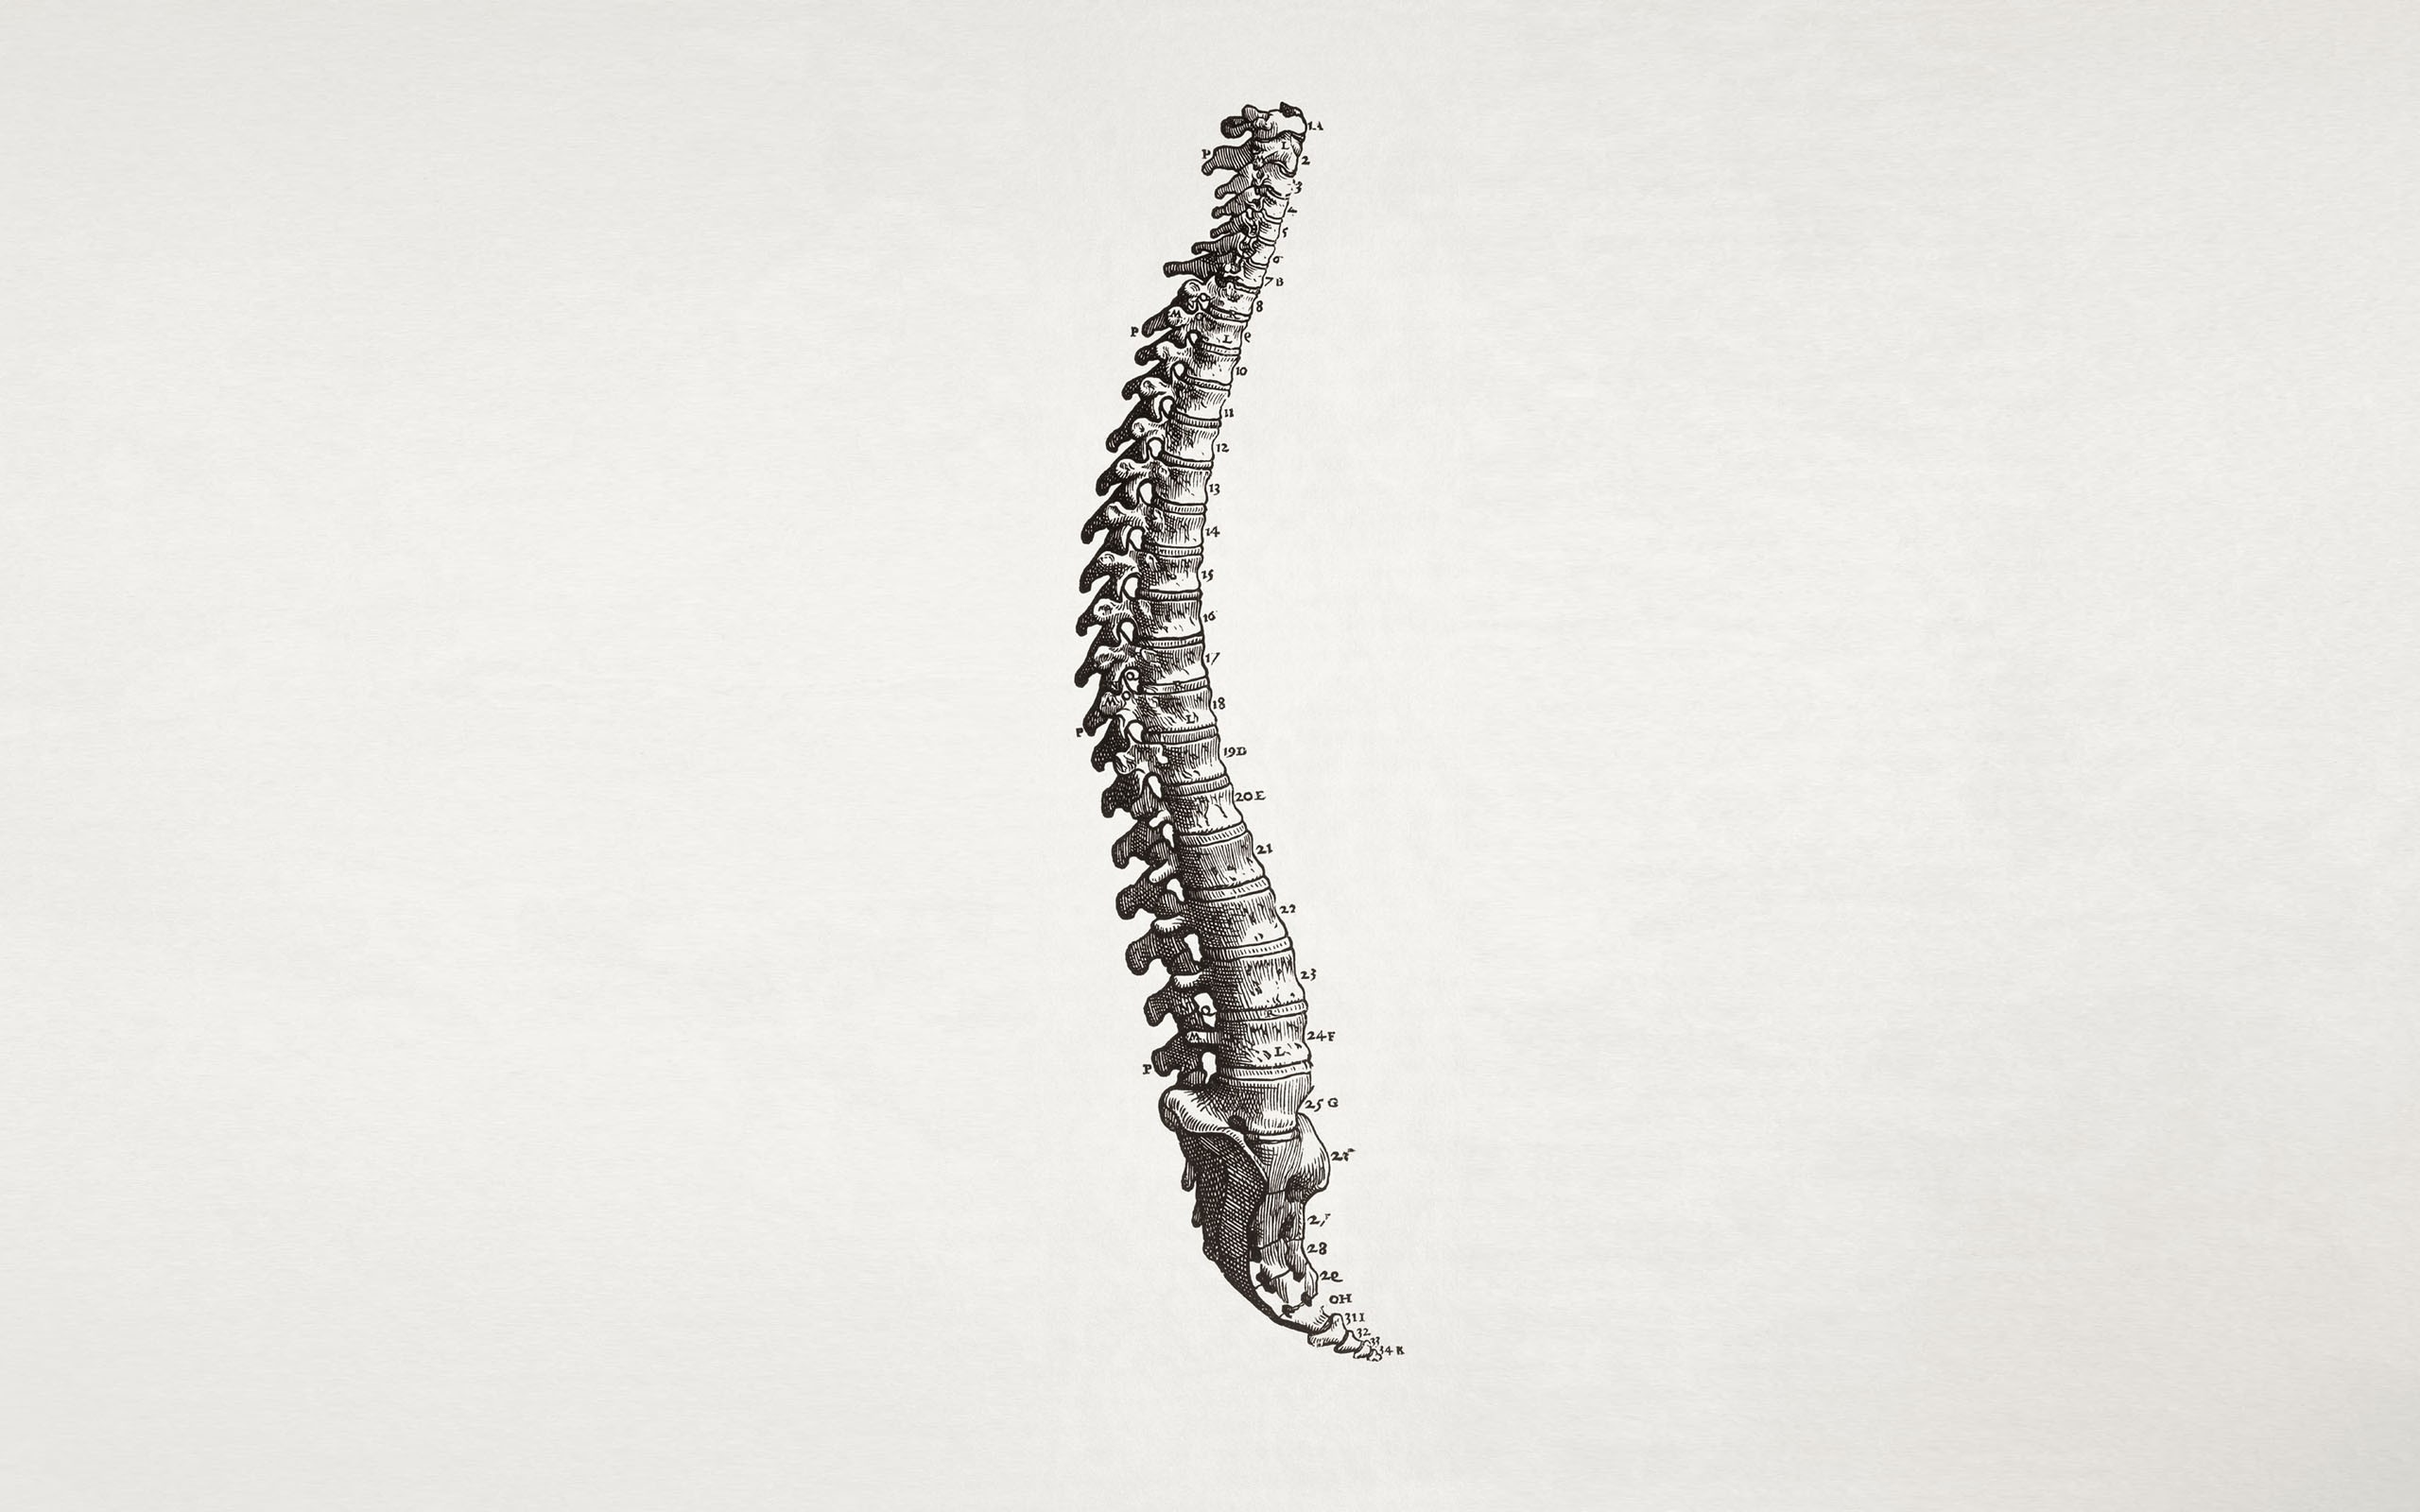 General 2560x1600 medicine spine simple background anatomy white background bones